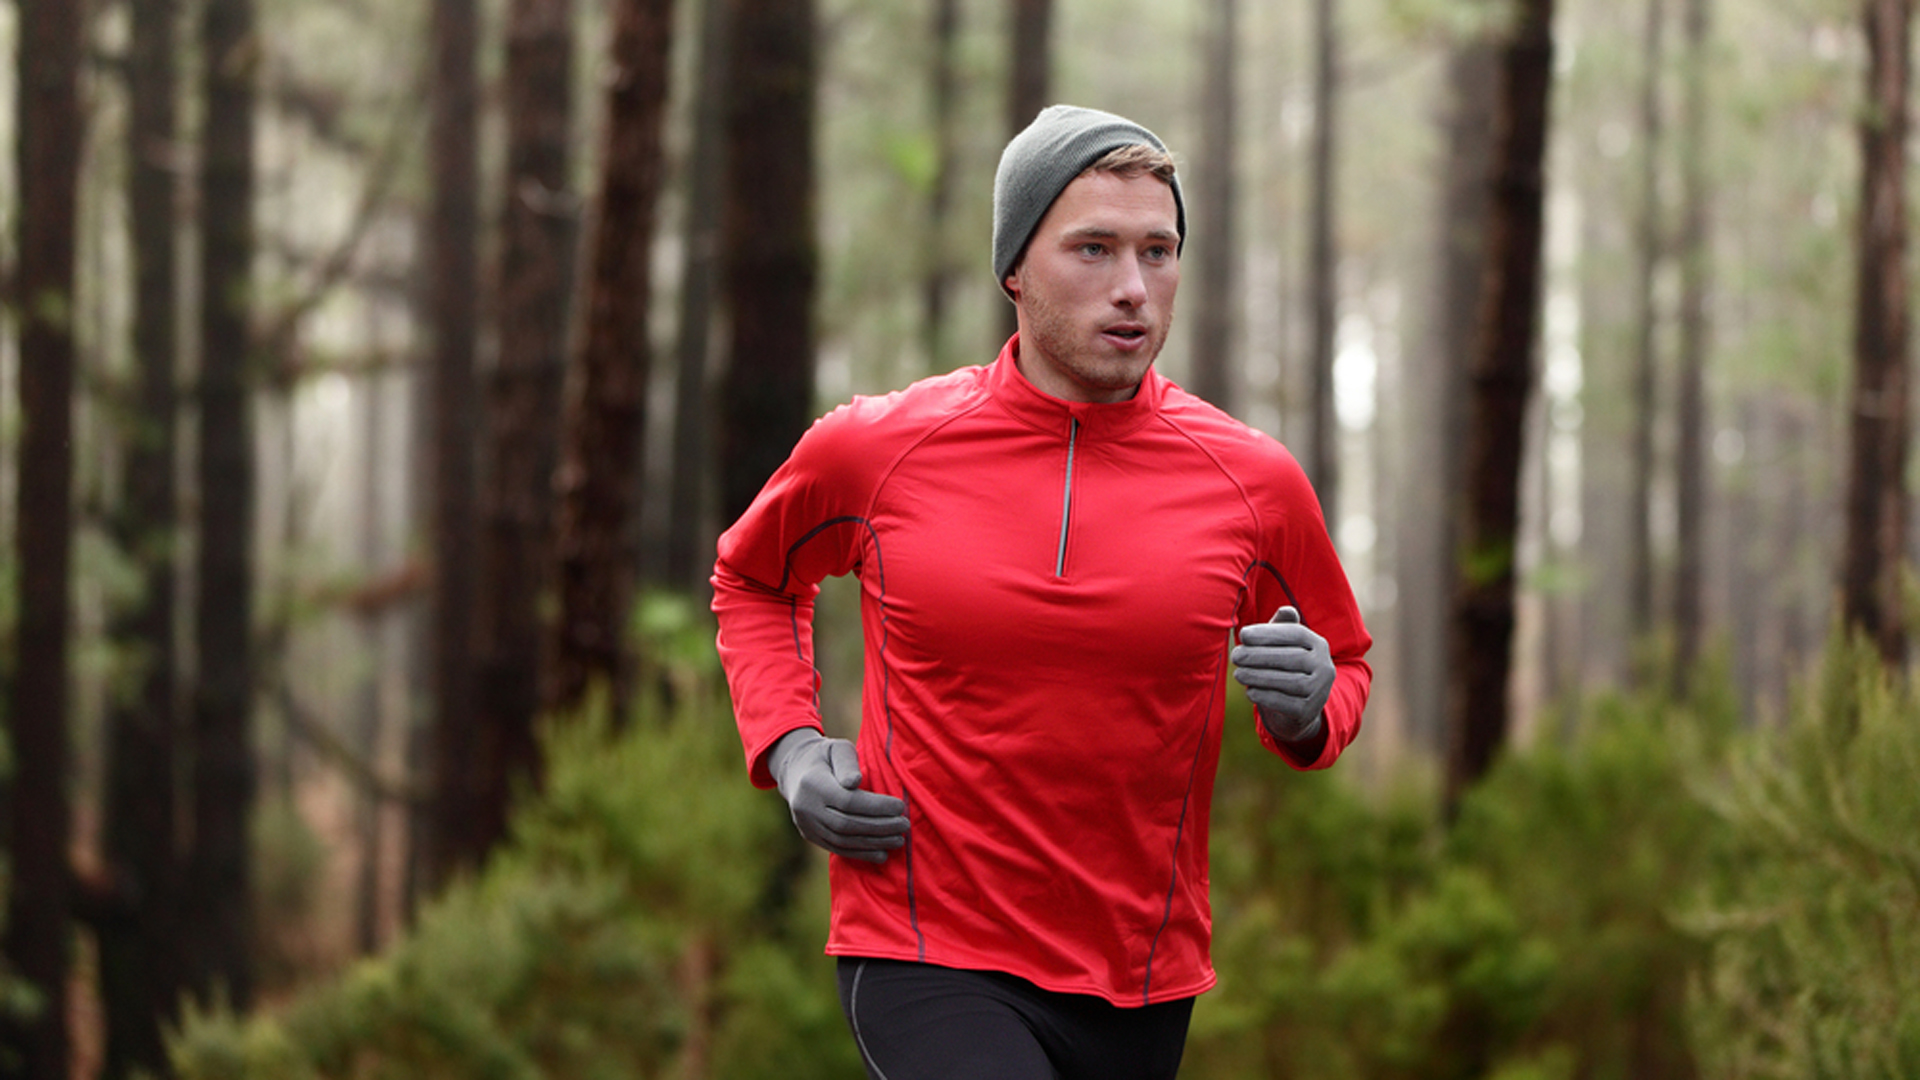 En una comparación entre personas que corrían con otras que eran sedentaria, un estudio estableció que el ejercicio reducía en un 27% el peligro de morir prematuramente por distintas causas